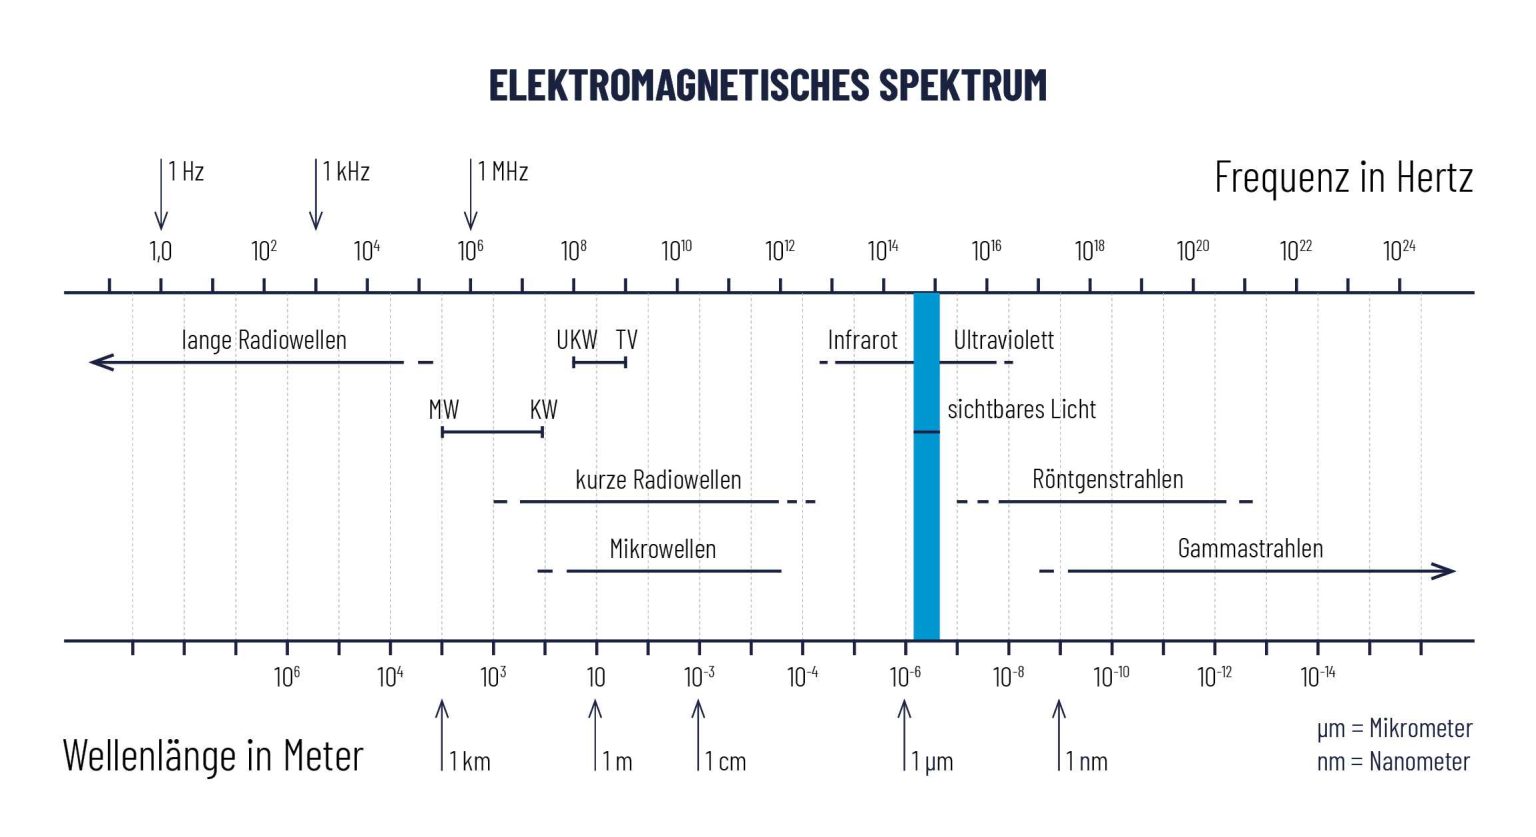 Tabelle Elektromagnetisches Spektrum, oben Frequenz in Hertz, untern Wellenlänge in Meter